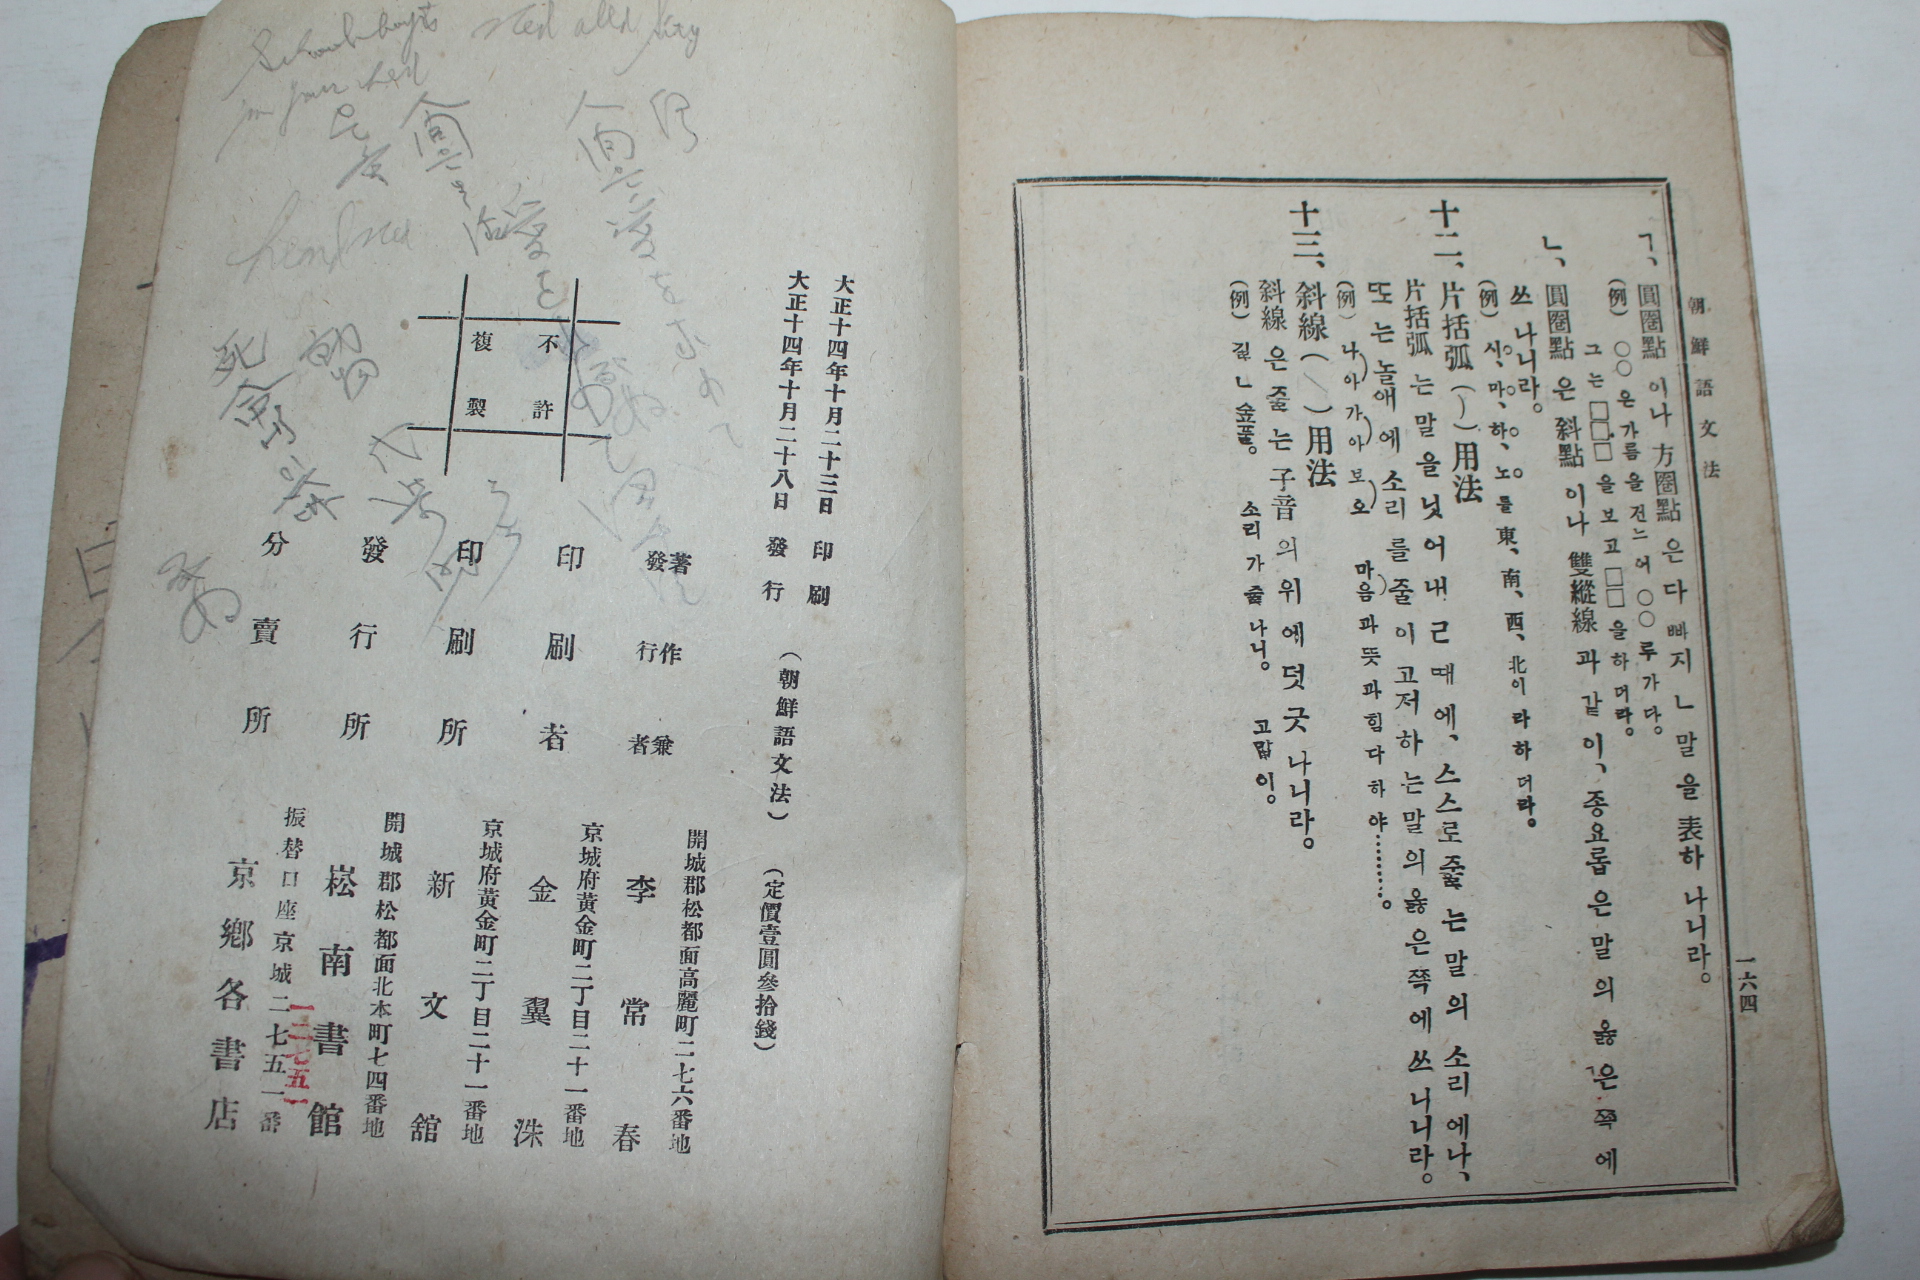 1925년 백야 이상춘(李常春) 조선어문법(朝鮮語文法)